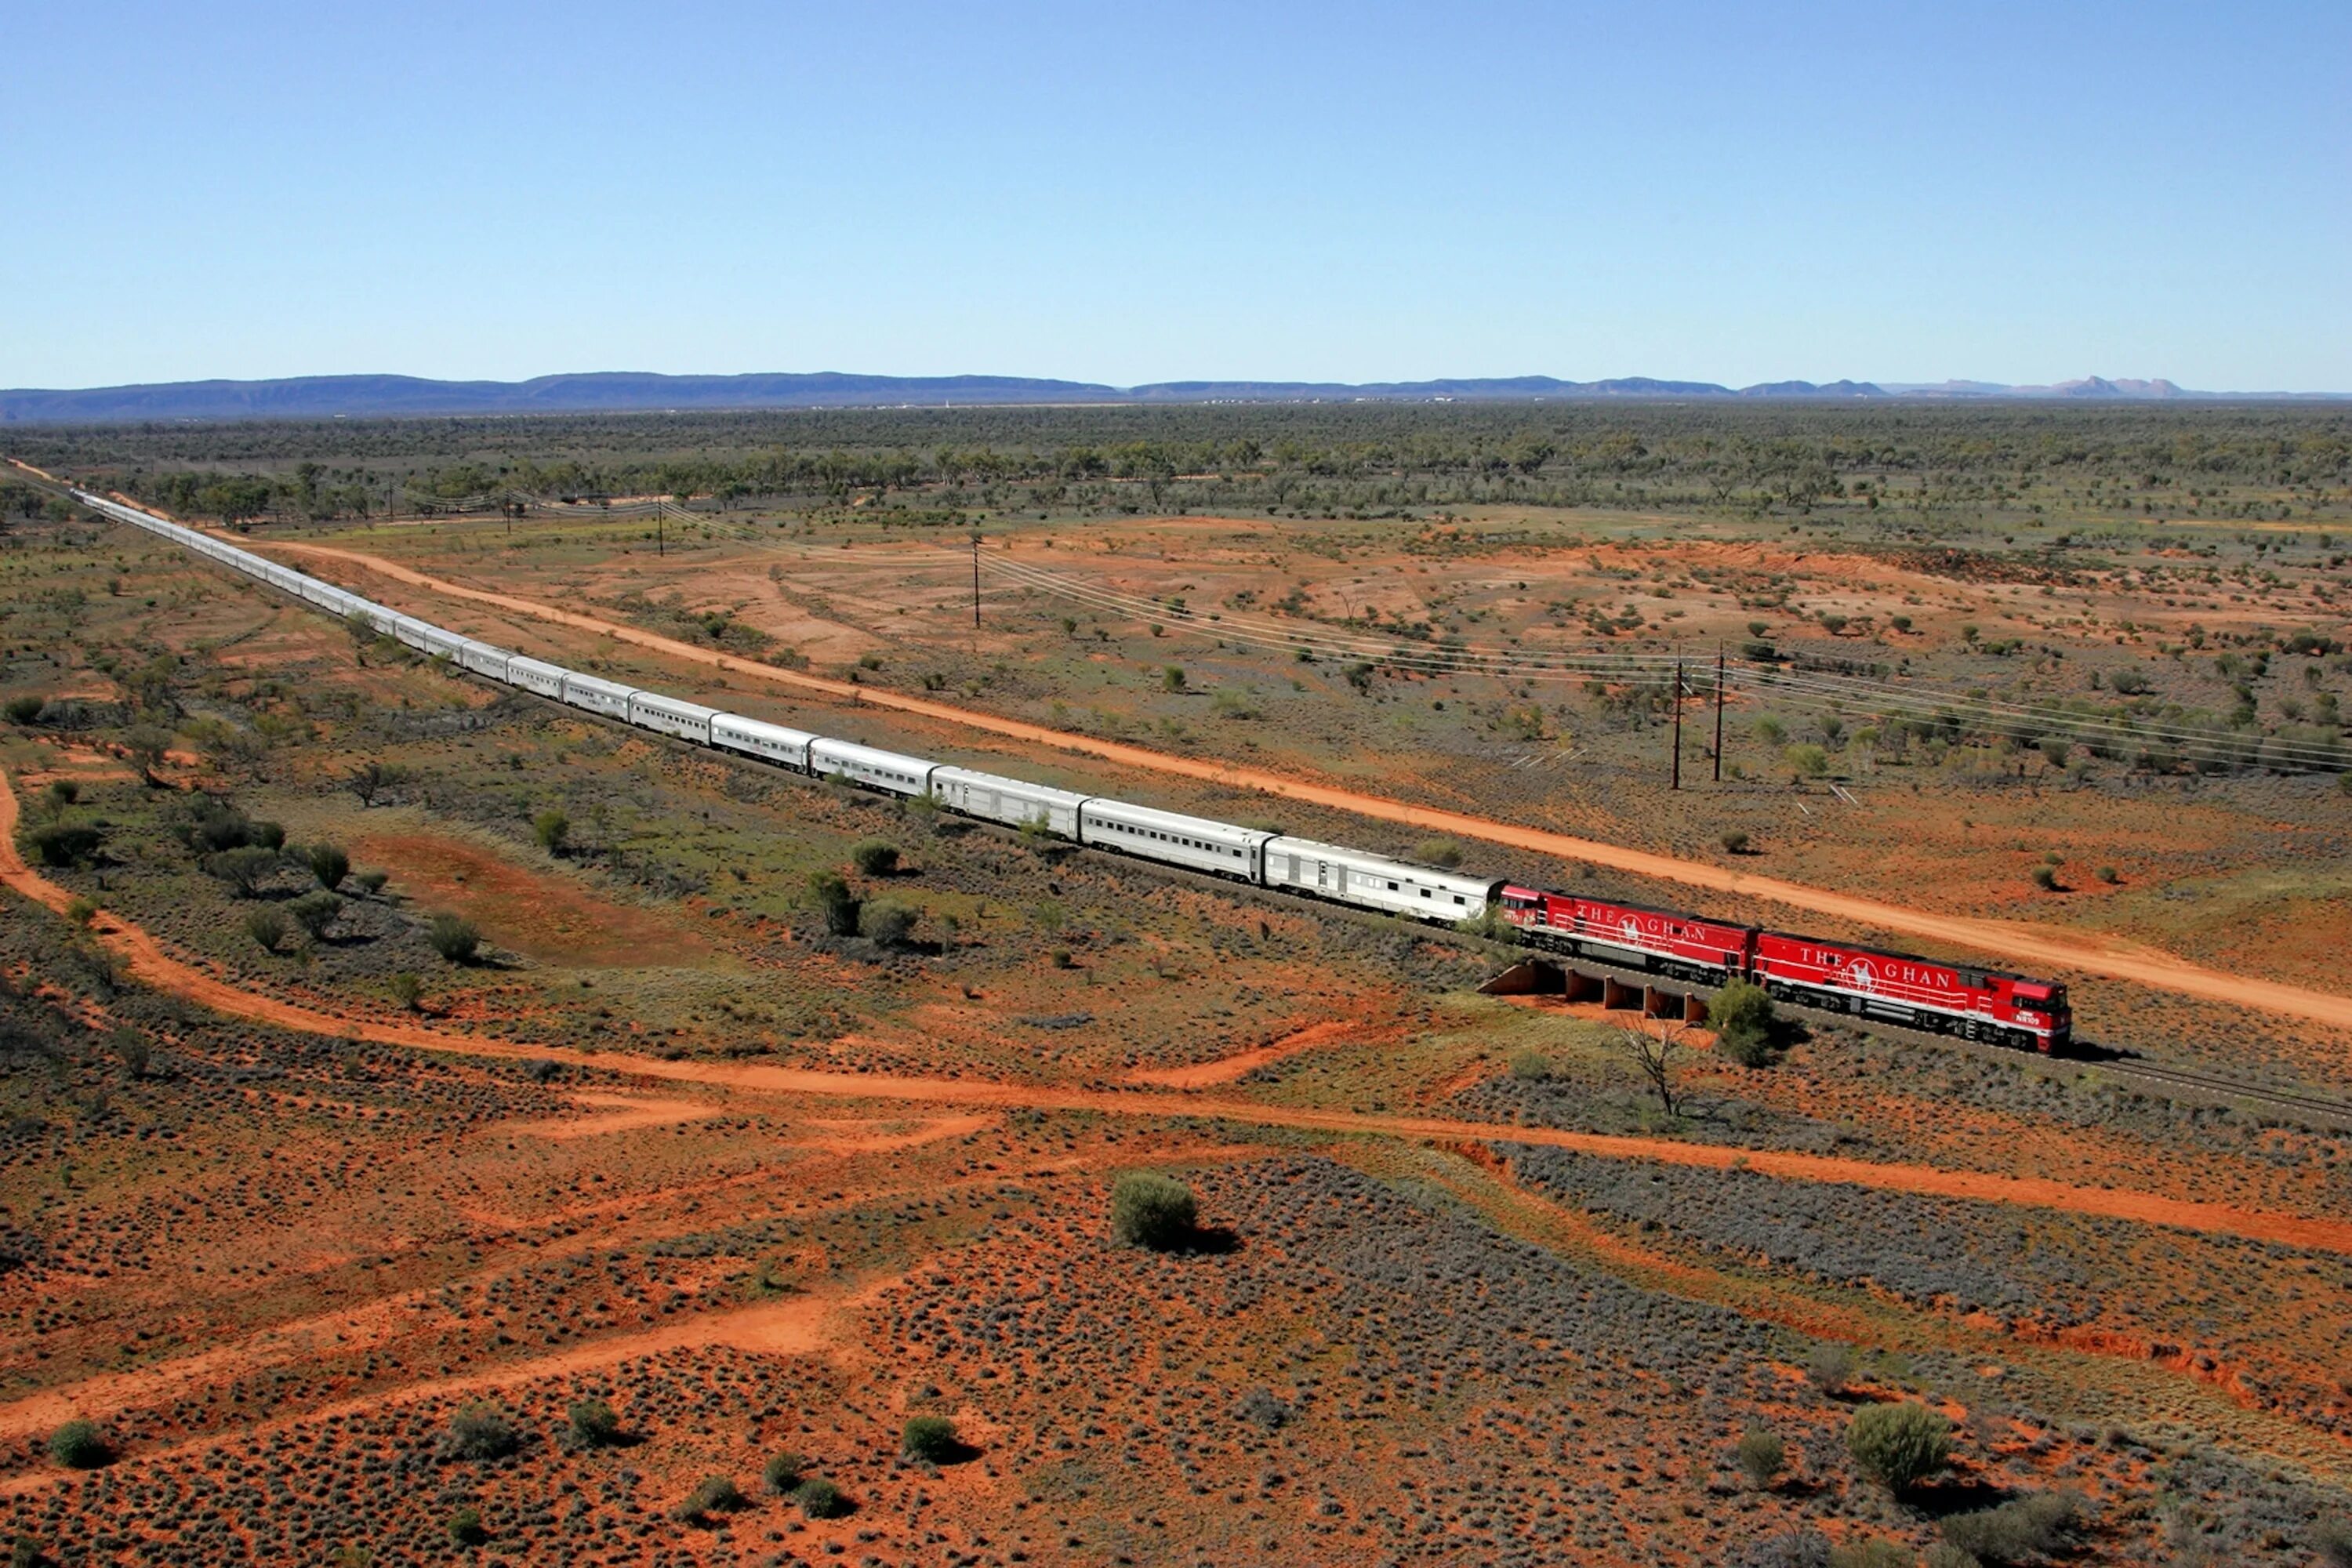 Поезд Ган Австралия the Ghan. Трансконтинентальная железная дорога Австралия. Самый длинный поезд в мире 682 вагона. Трансконтинентальная магистраль Сидней Перт. Long train journey